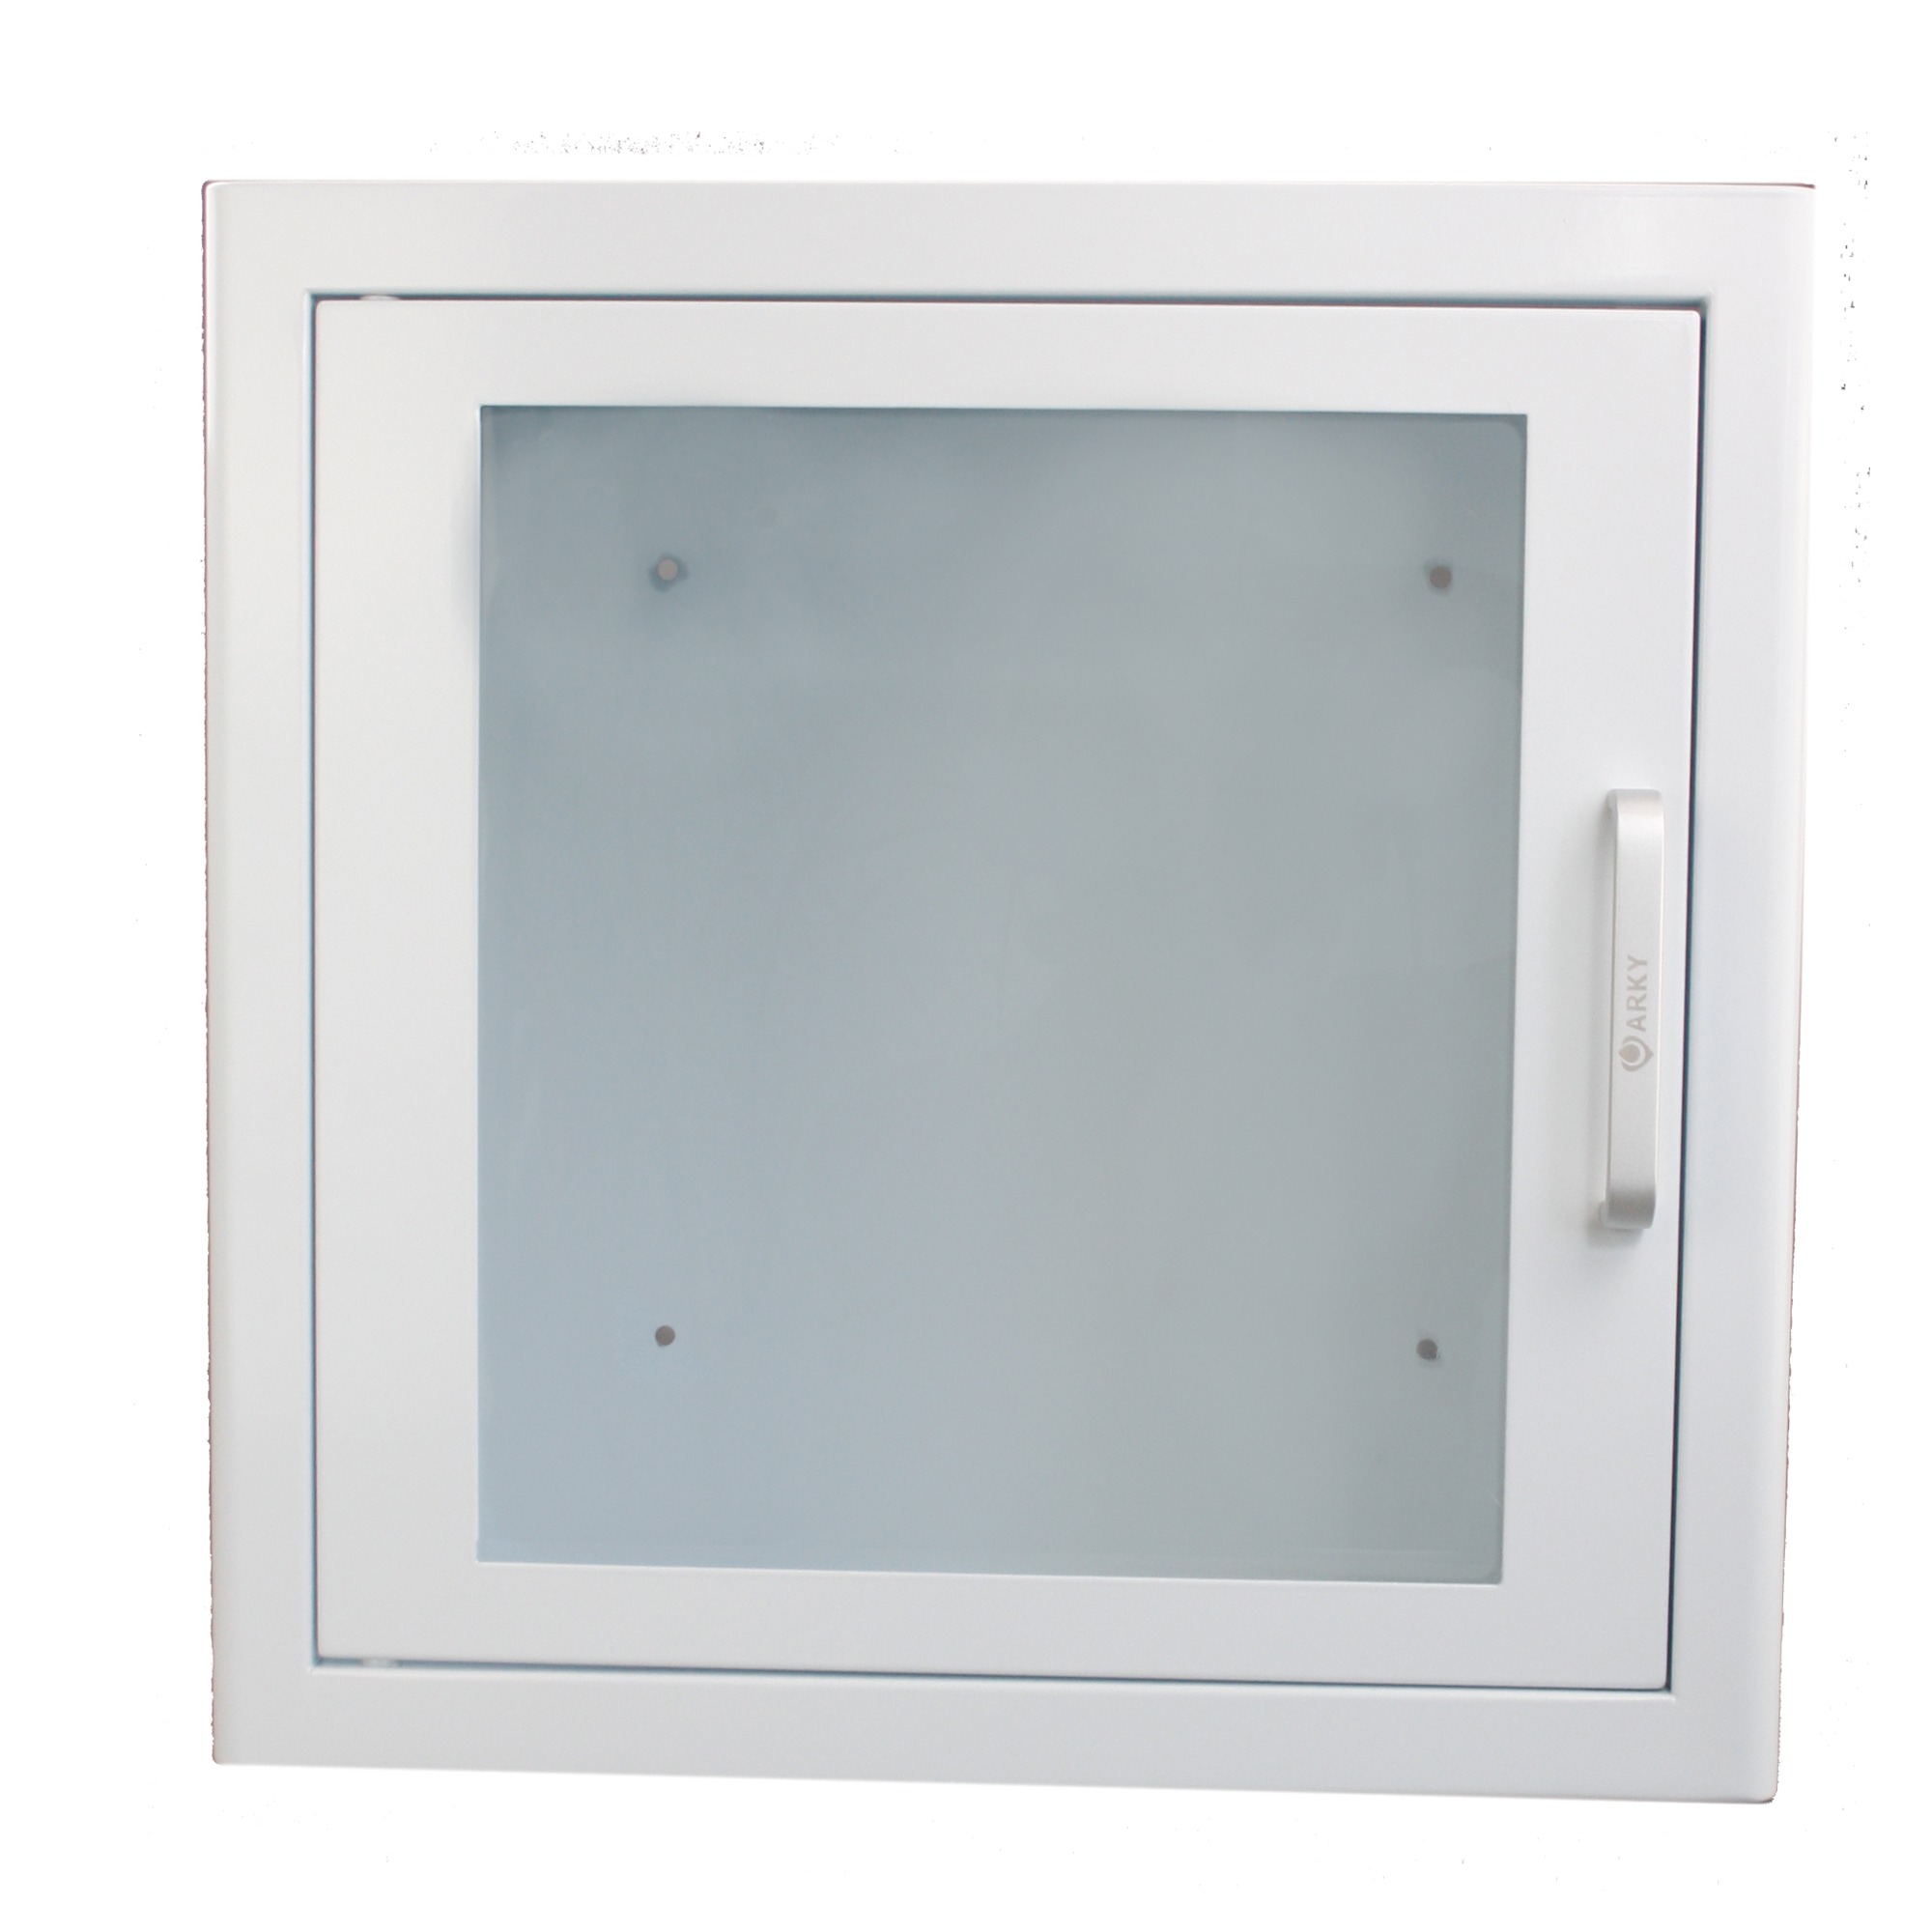 7892-1 AED Metall-Wandschrank AED Schrank mit Alarm Inneneinsatz weiß.jpg